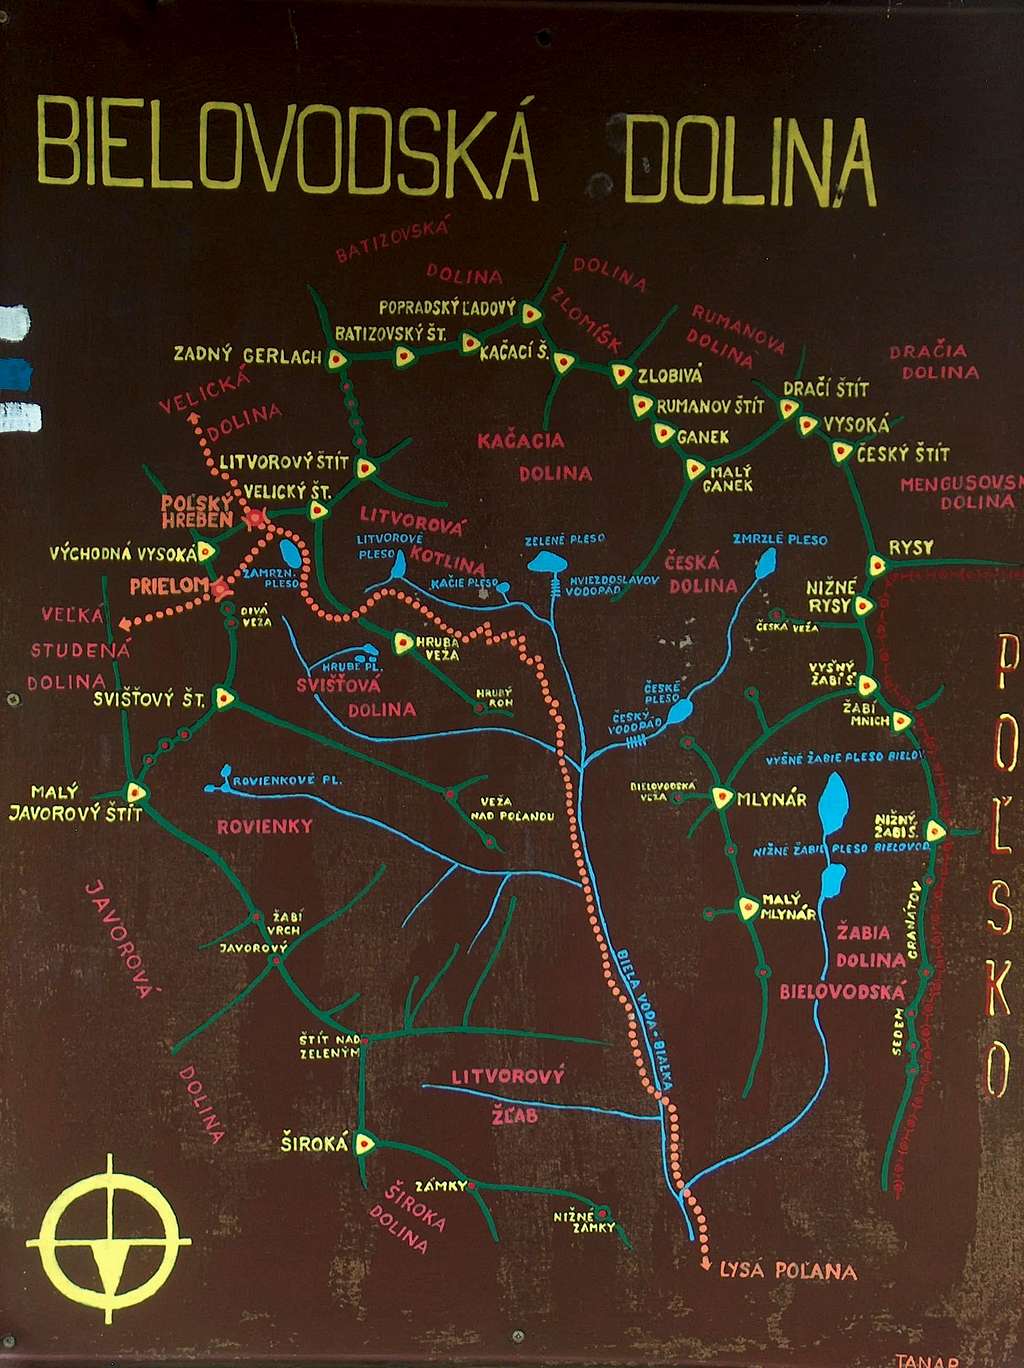 Bielovodska dolina map